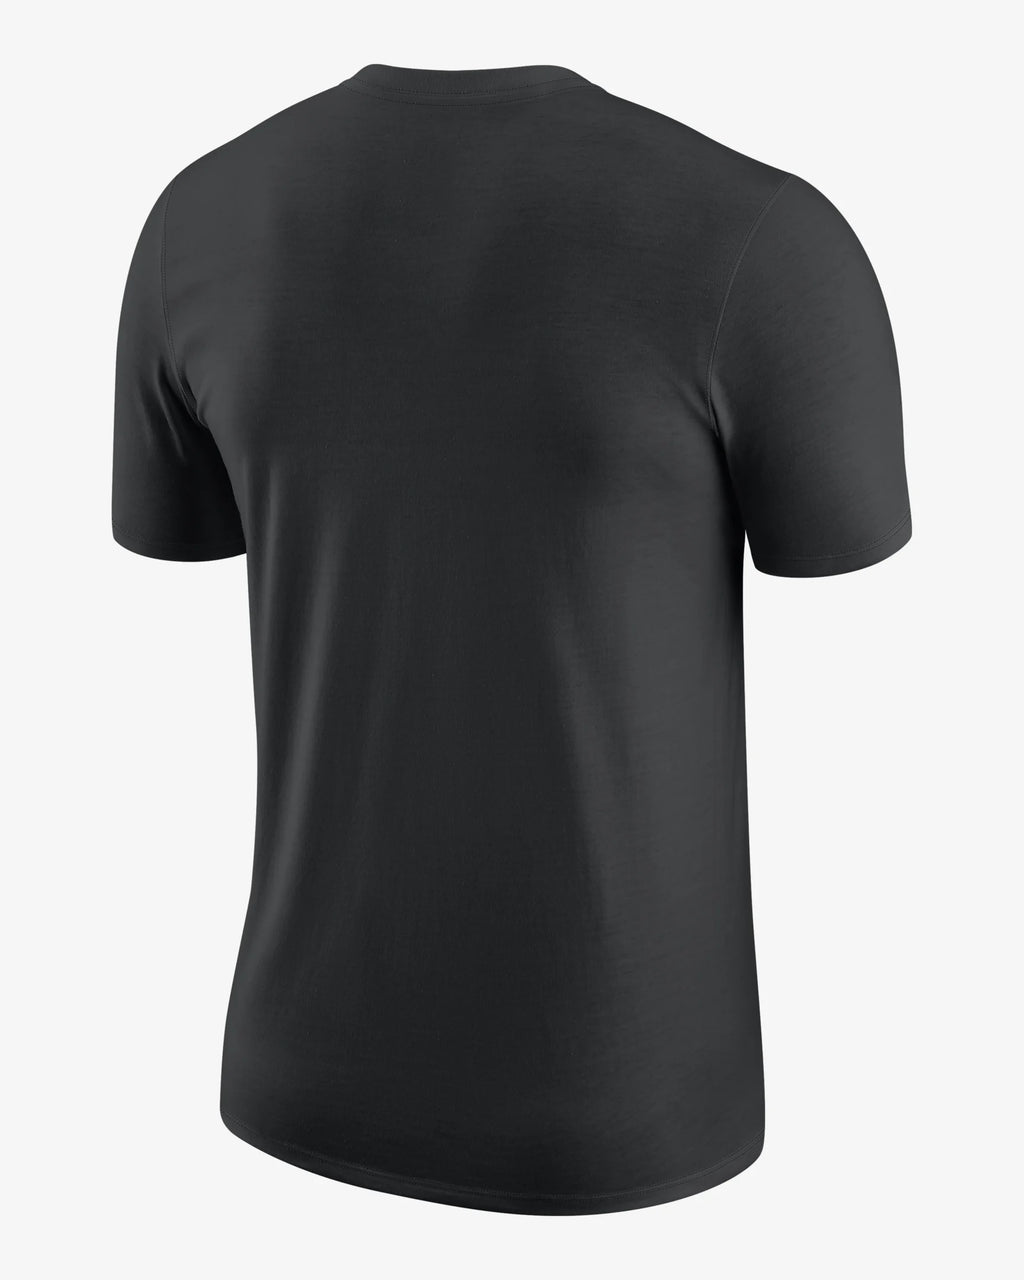 Phoenix Suns Men's Nike NBA T-Shirt 'Black'